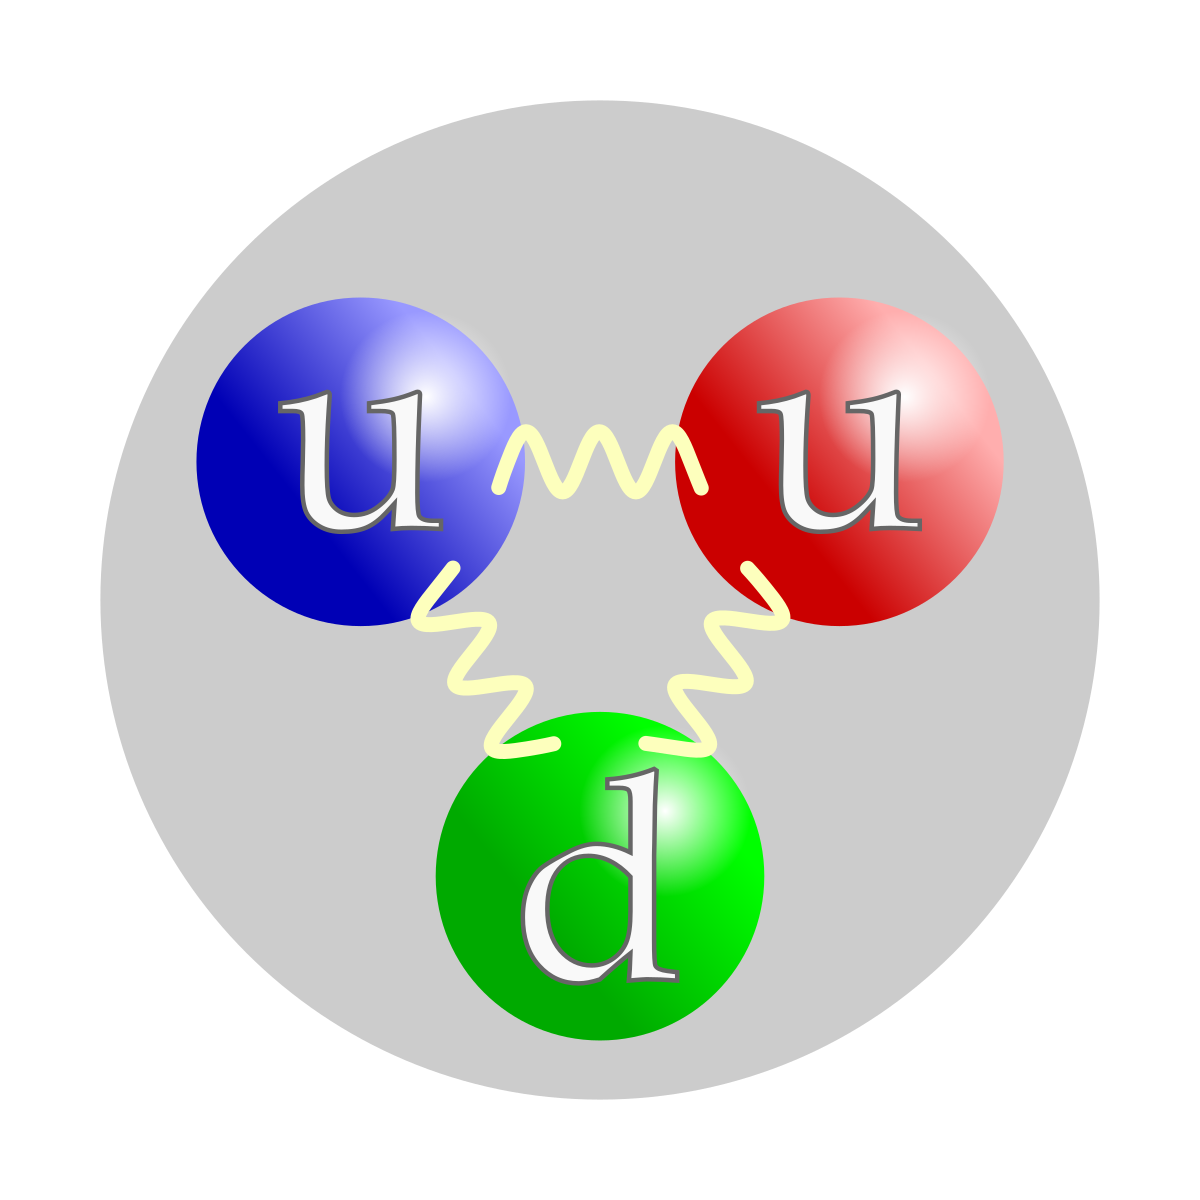 Représentation schématique de la composition en quarks de valence d'un proton, avec deux quarks u et un quark d. L'interaction forte est transmise par des gluons (représentés ici par un tracé sinusoïdal). La couleur des quarks fait référence aux trois types de charges de l'interaction forte : rouge, verte et bleue. Le choix de couleur effectué ici est arbitraire, la charge de couleur circulant à travers les trois quarks.